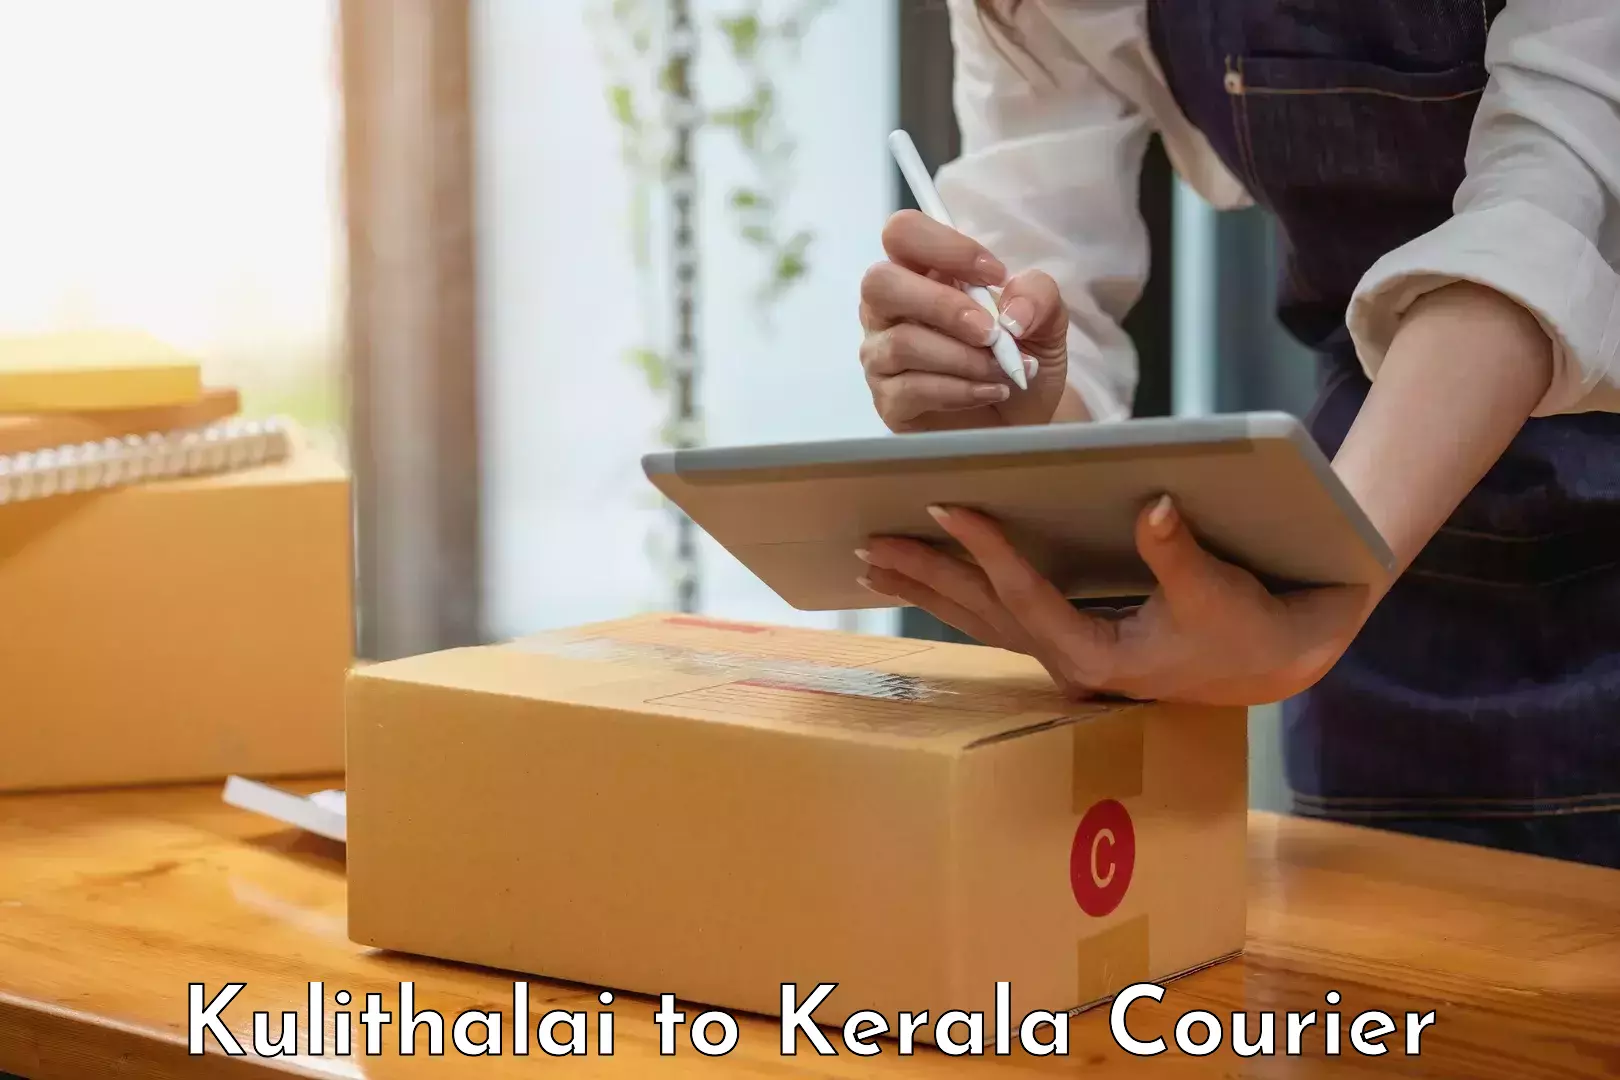 Online package tracking Kulithalai to Kerala